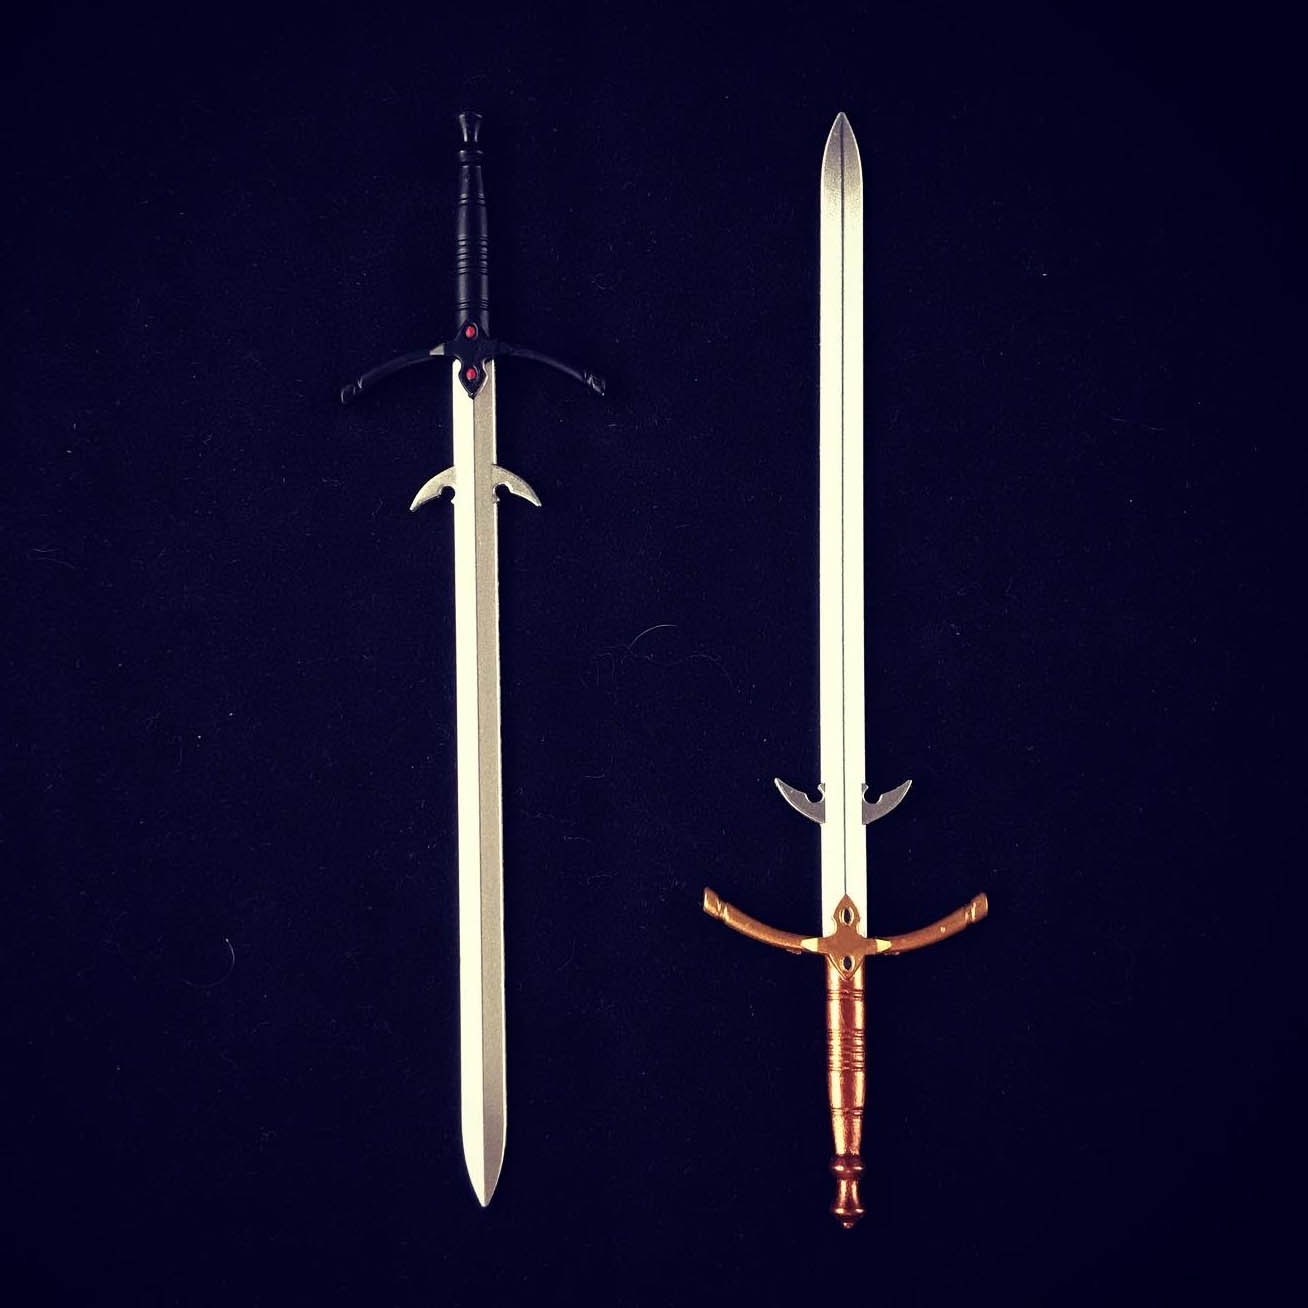 Zweihänder Sword Mythic Legions weapon